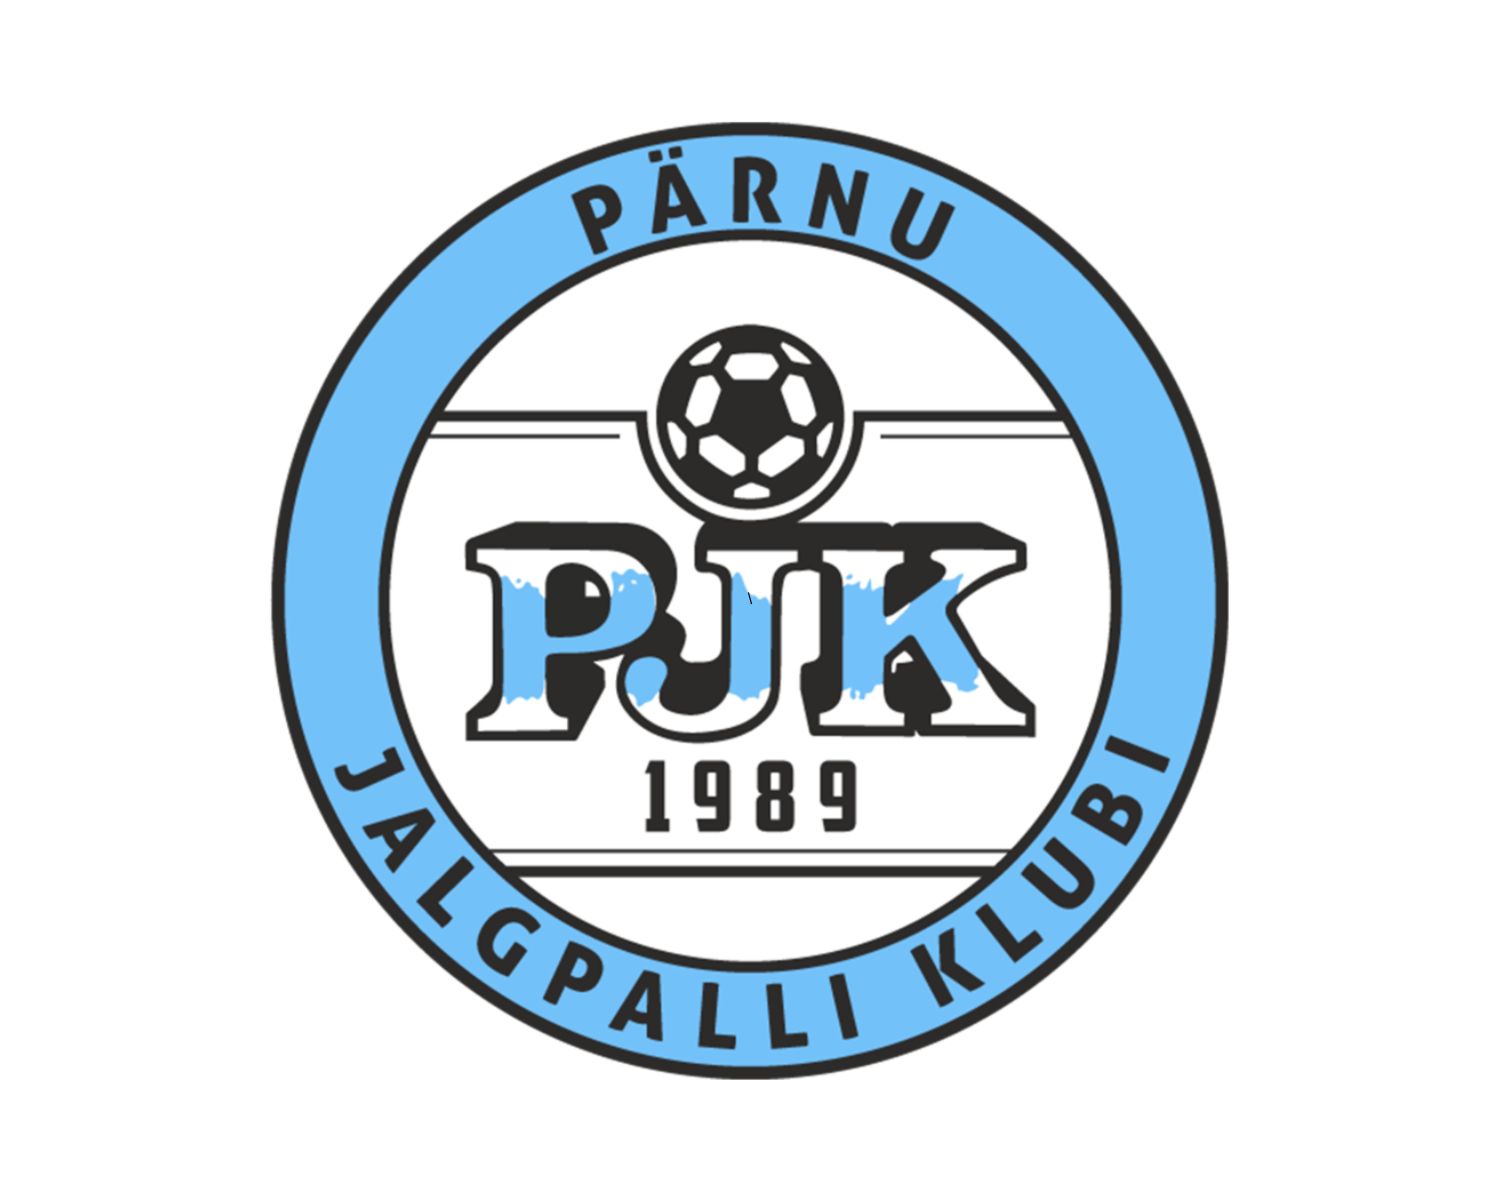 parnu-jk-22-football-club-facts